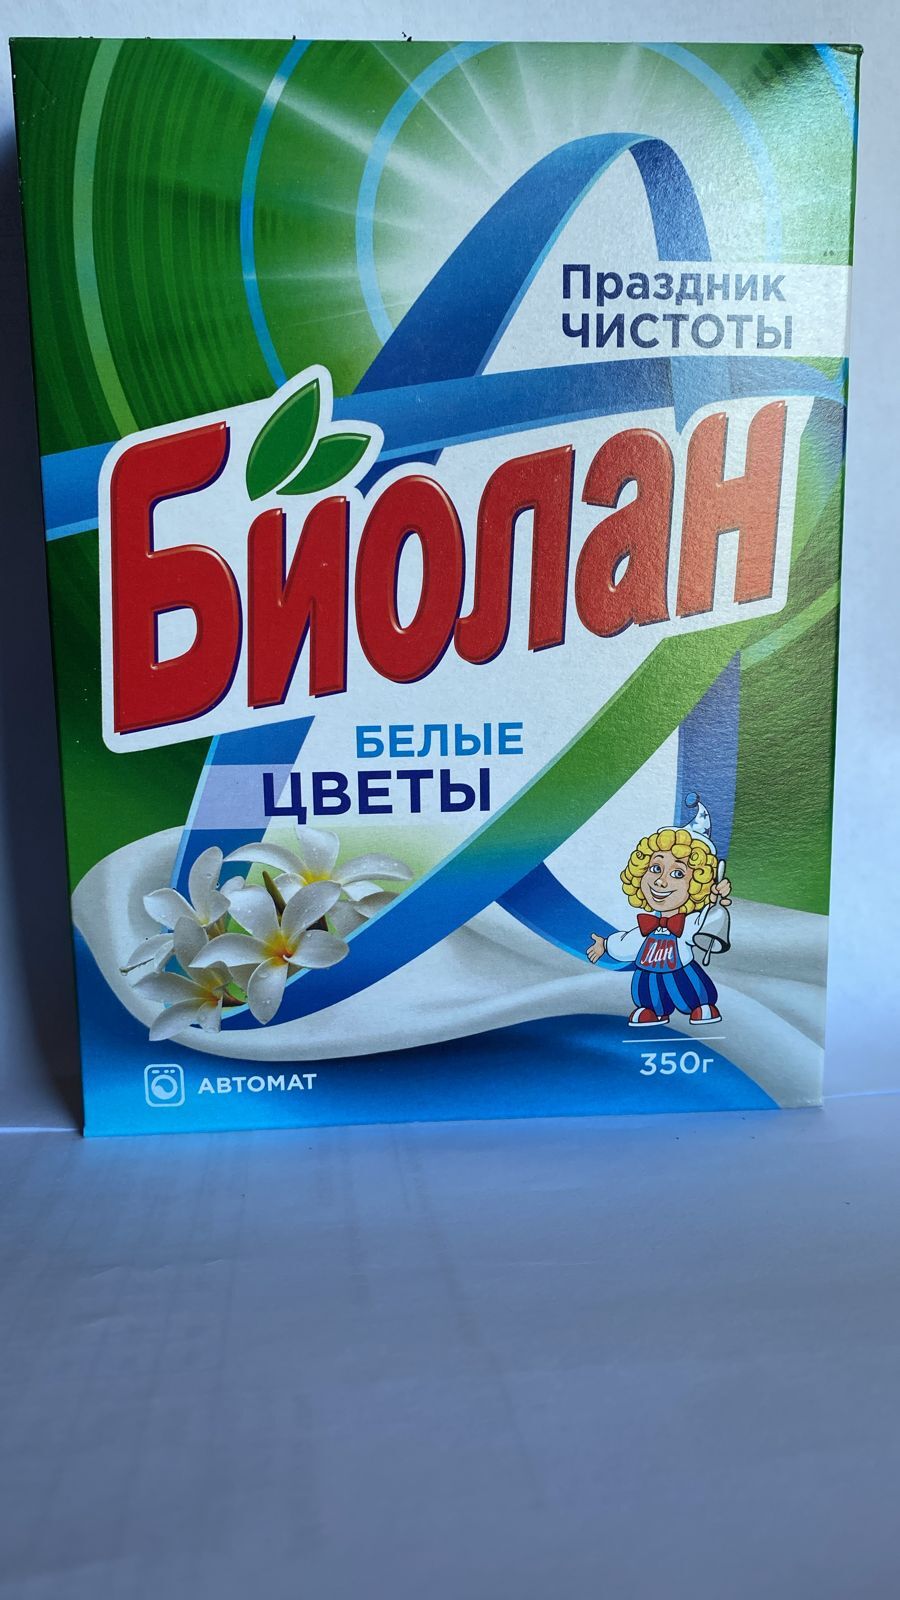 Биолан СМС Порошок Белые цветы автомат 350 гр 1/24 шт